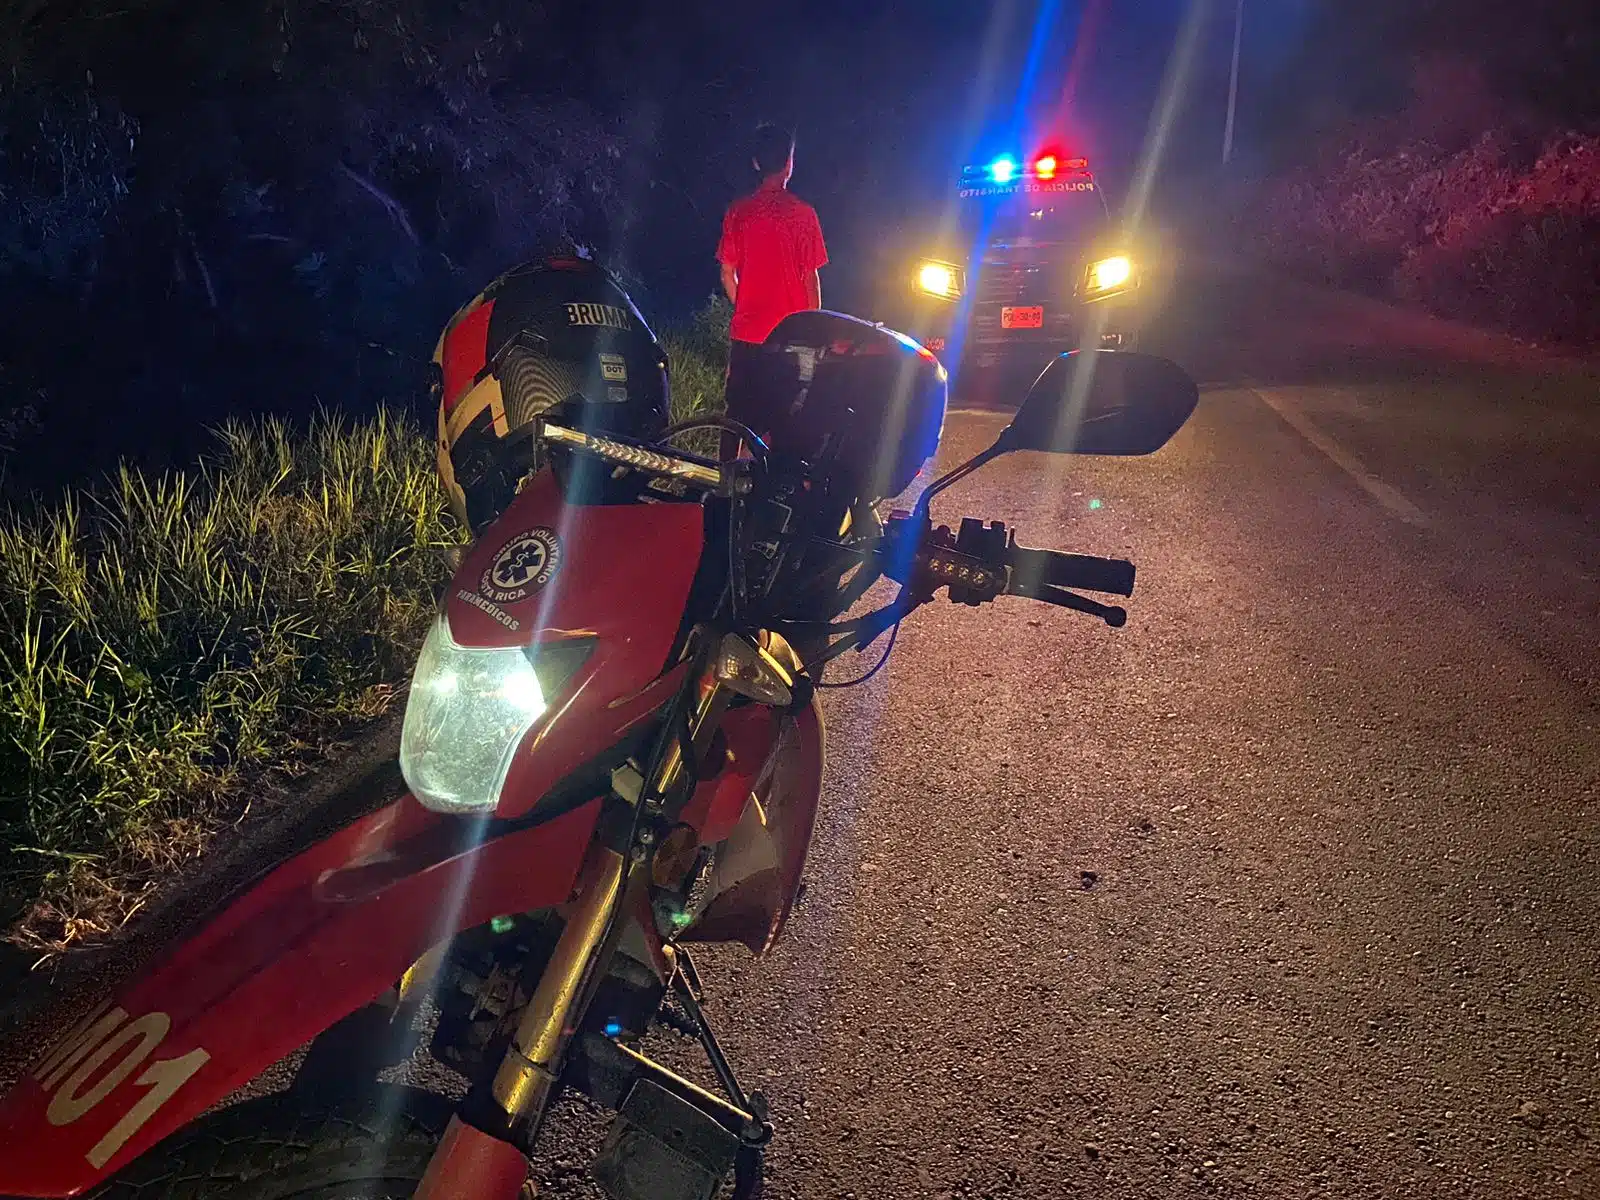 Motocicleta y patrulla en carretera